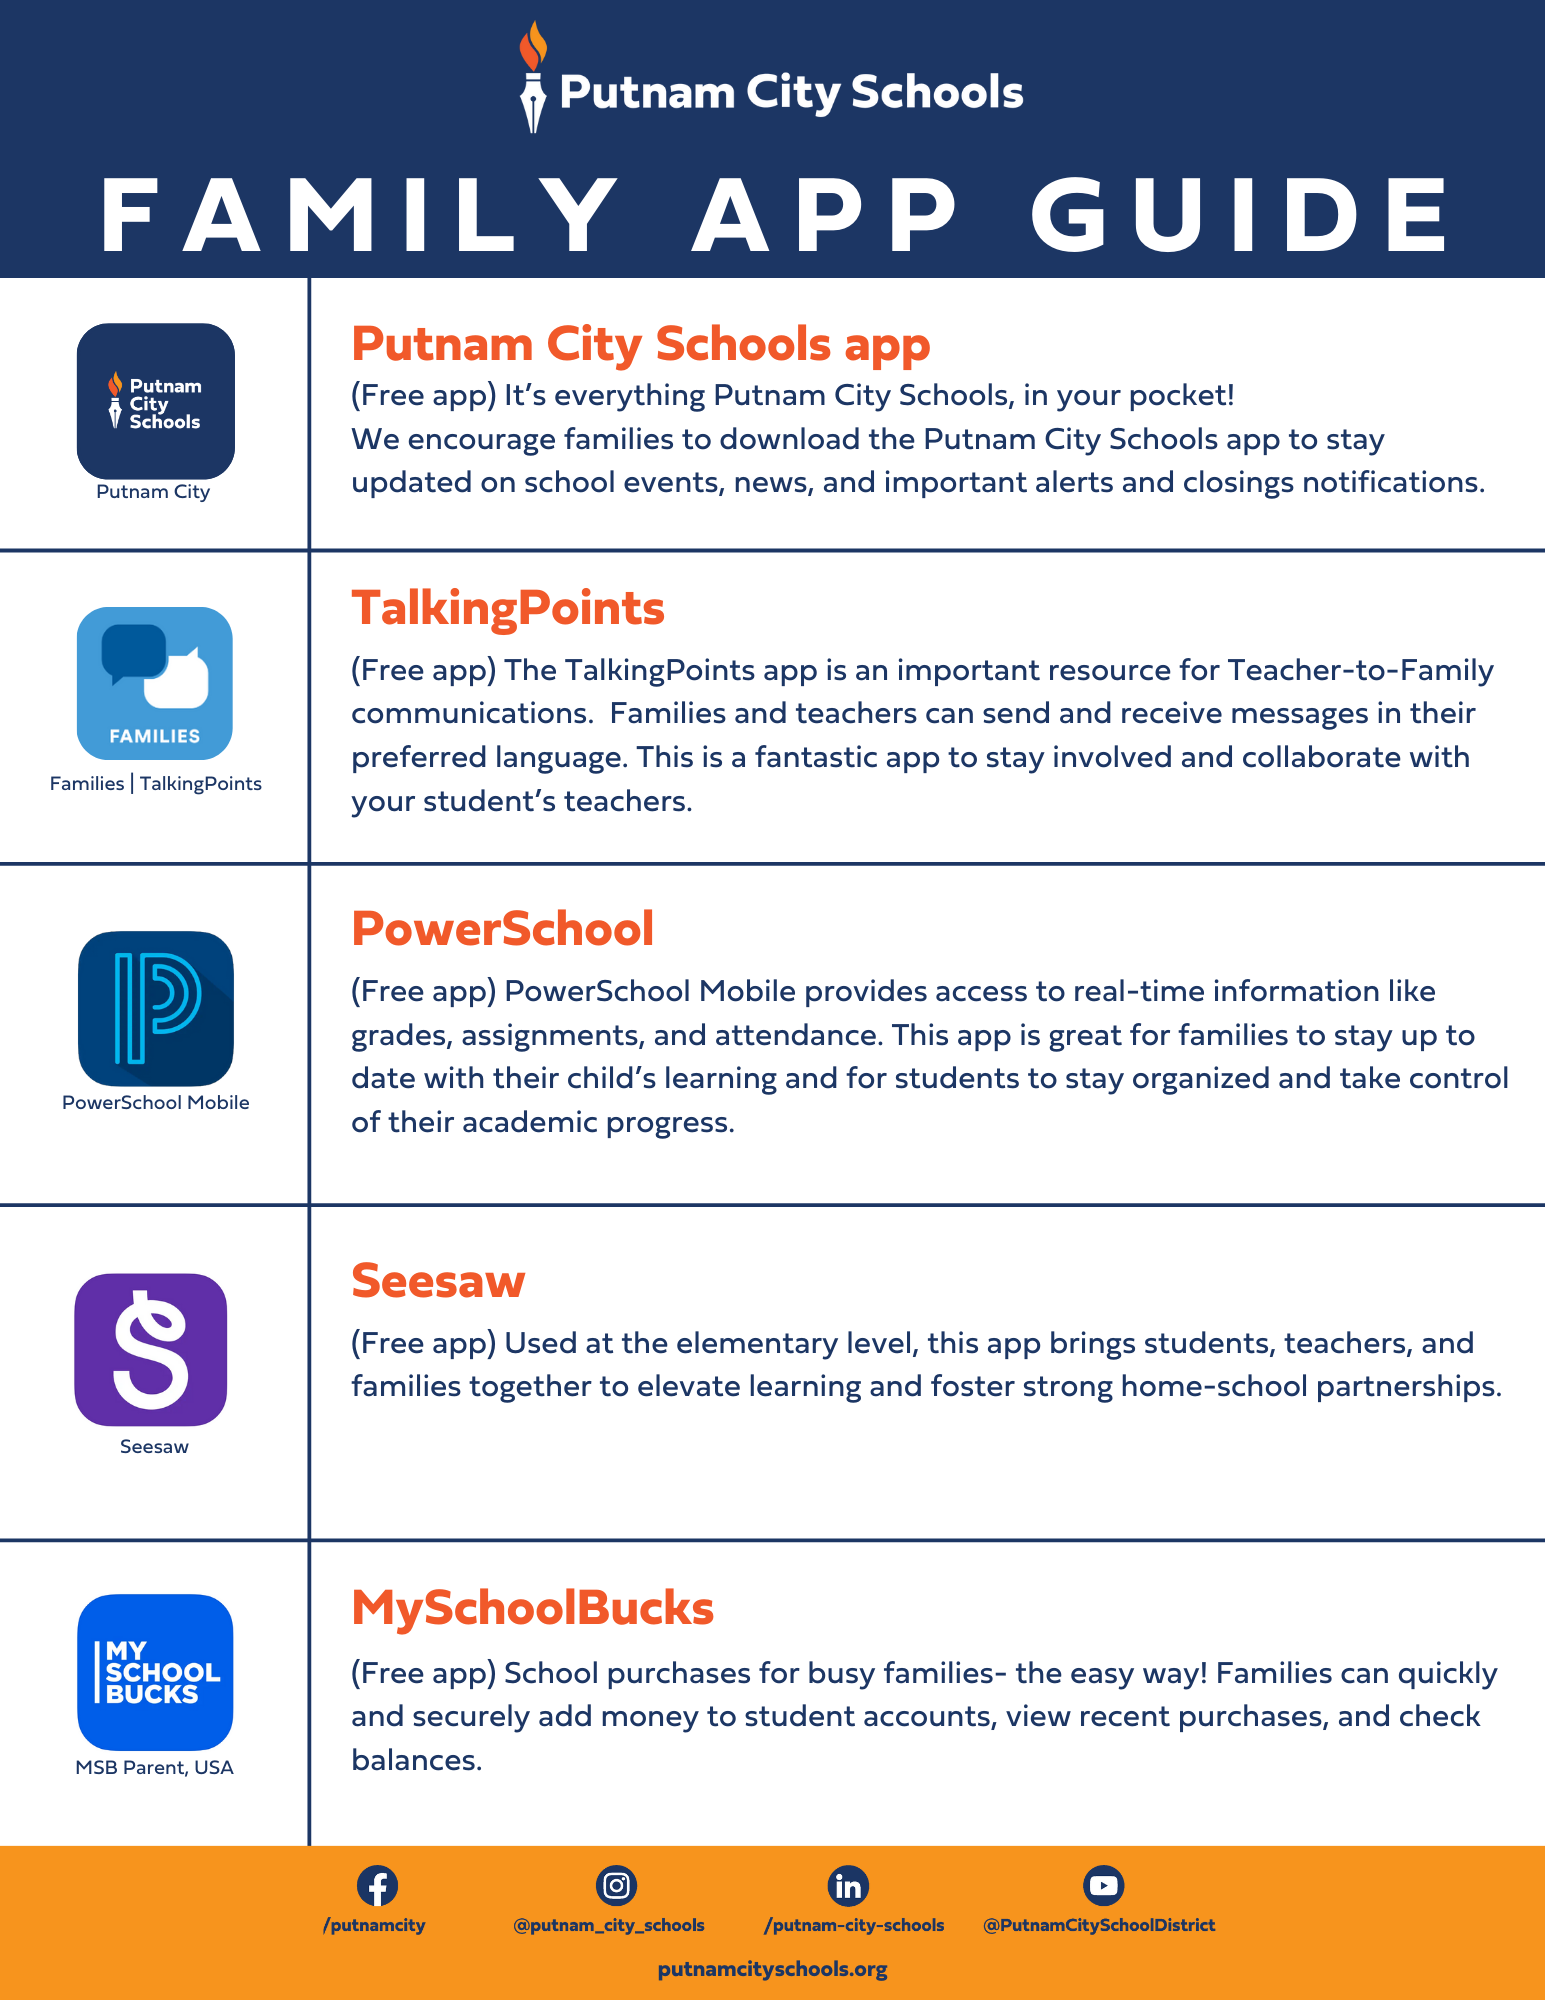 Family App Guide, Download the following apps - Putnam City, TalkingPoints, PowerSchool Mobile, Seesaw, MySchool Bucks